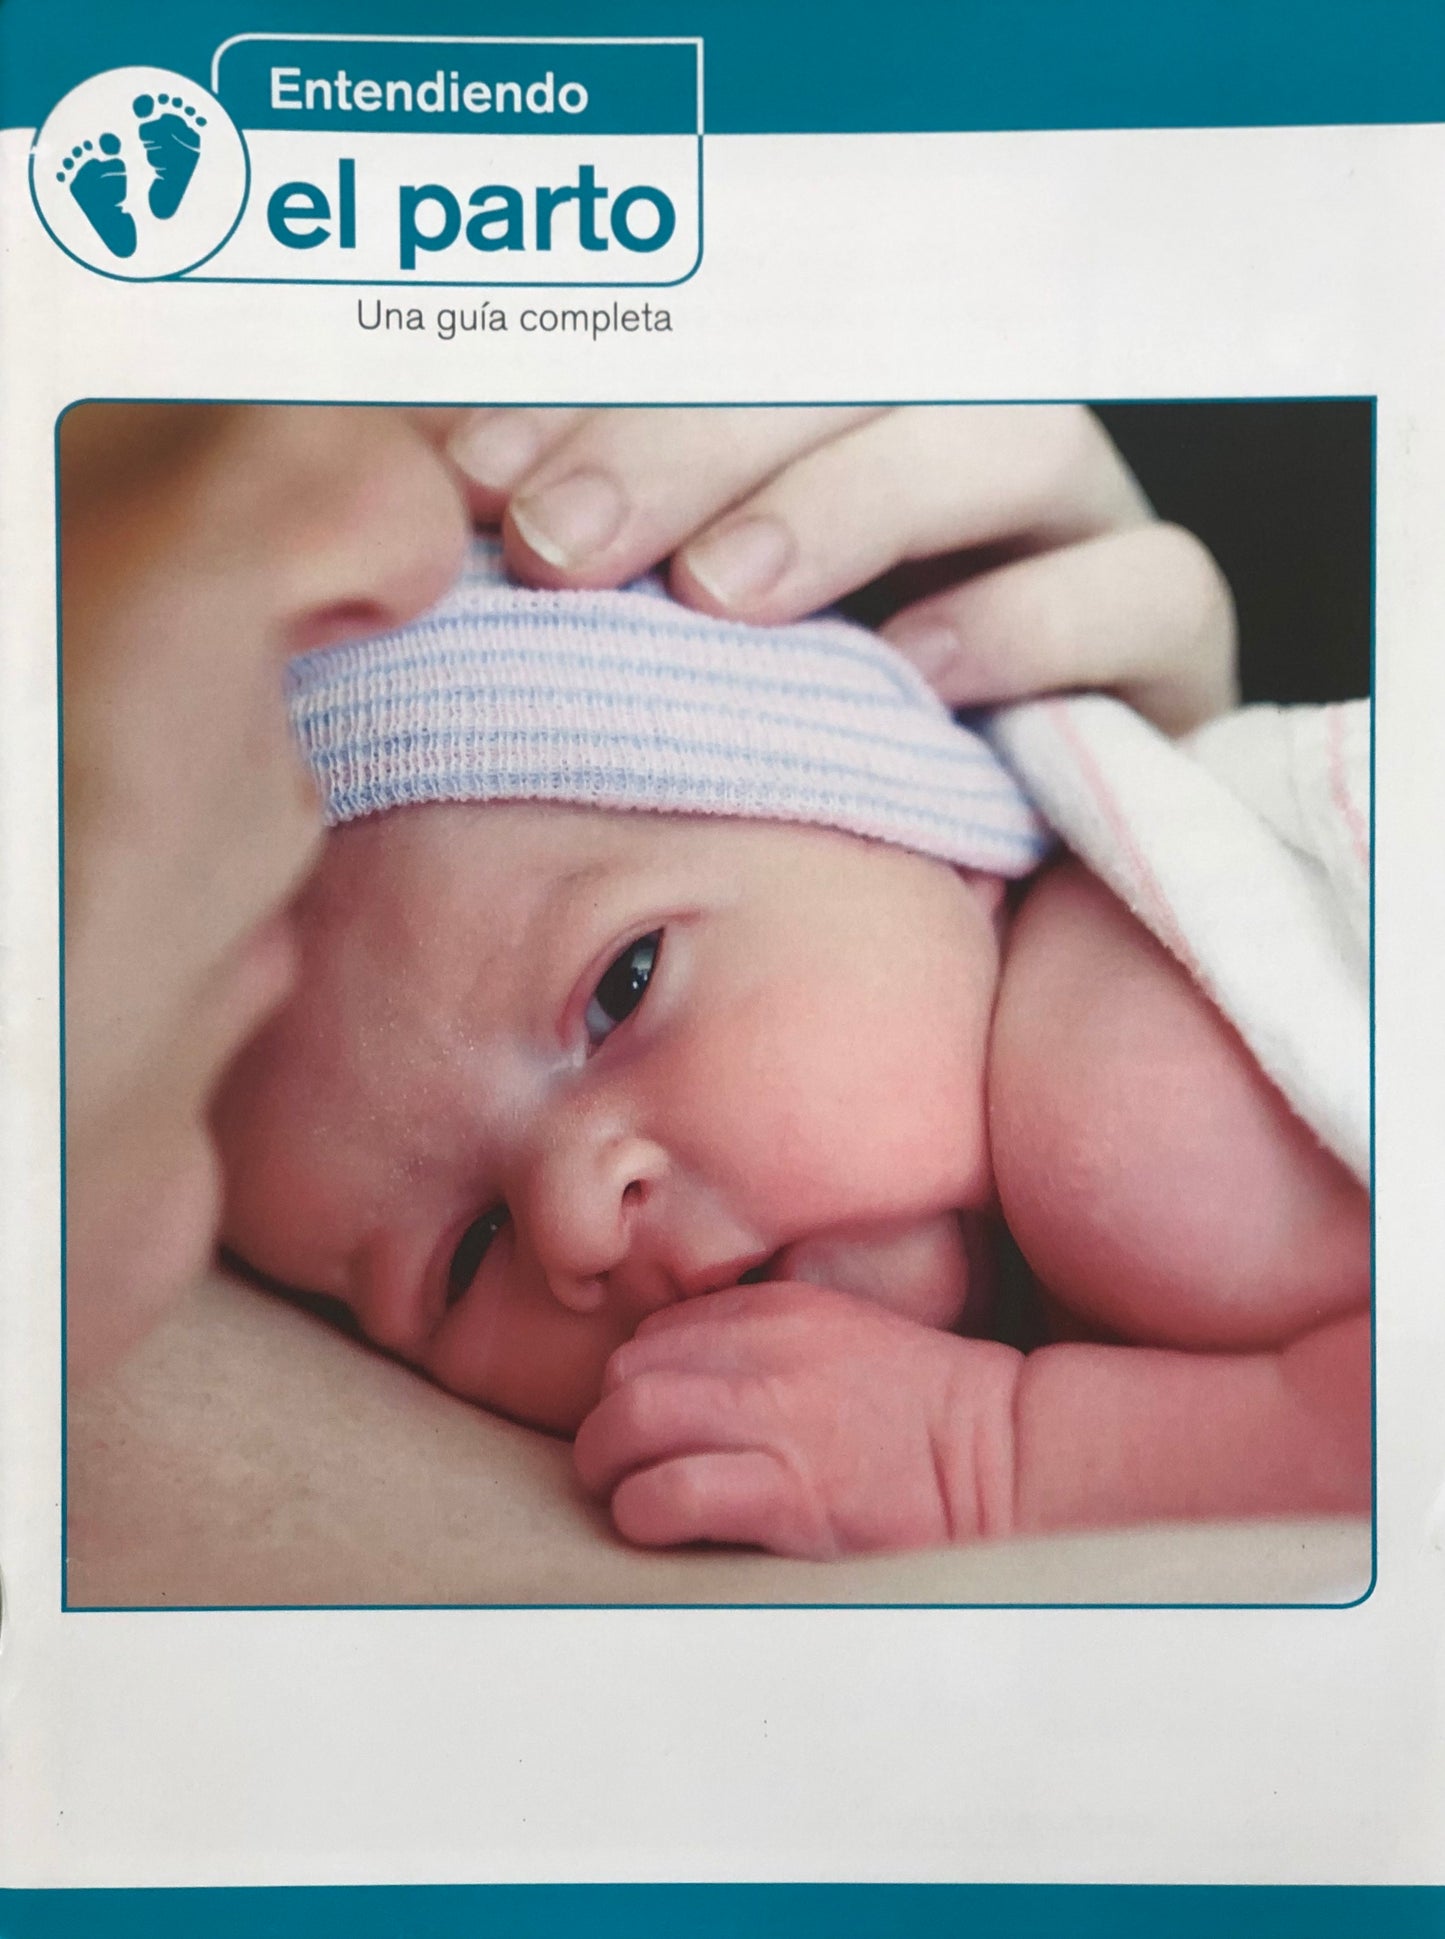 Entendiendo el parto (libro)